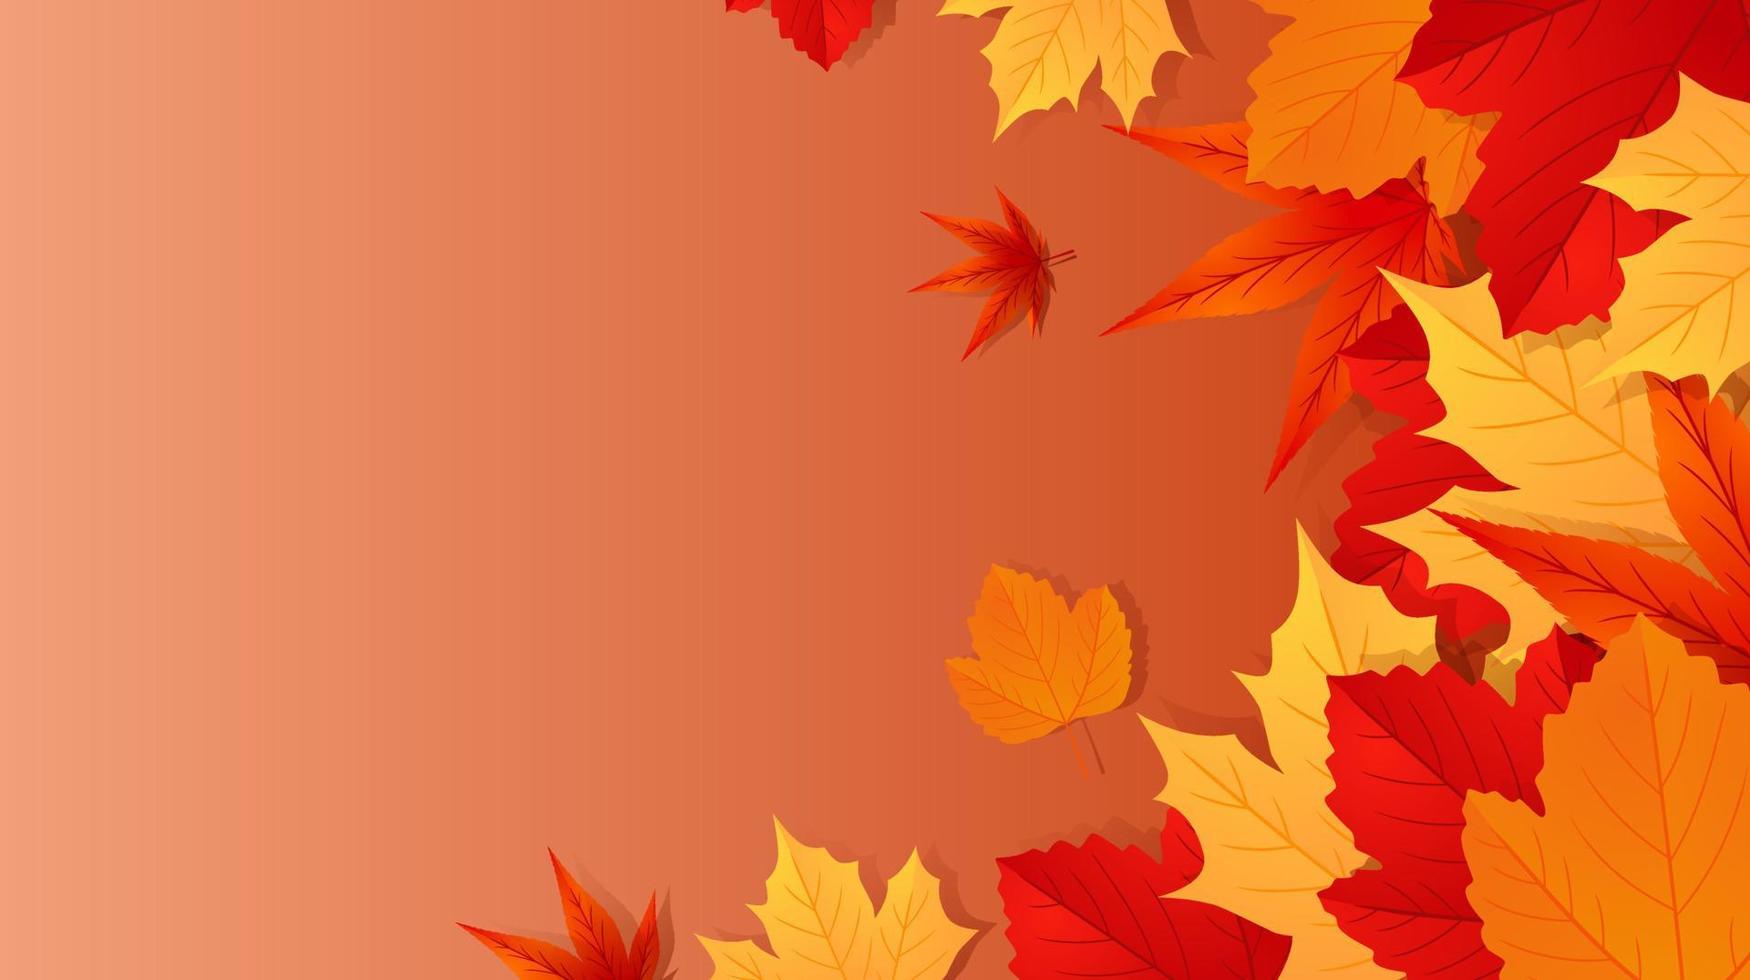 fundo de outono outono com folhas de outono douradas, vermelhas e laranja com espaço para texto. ilustração vetorial vetor